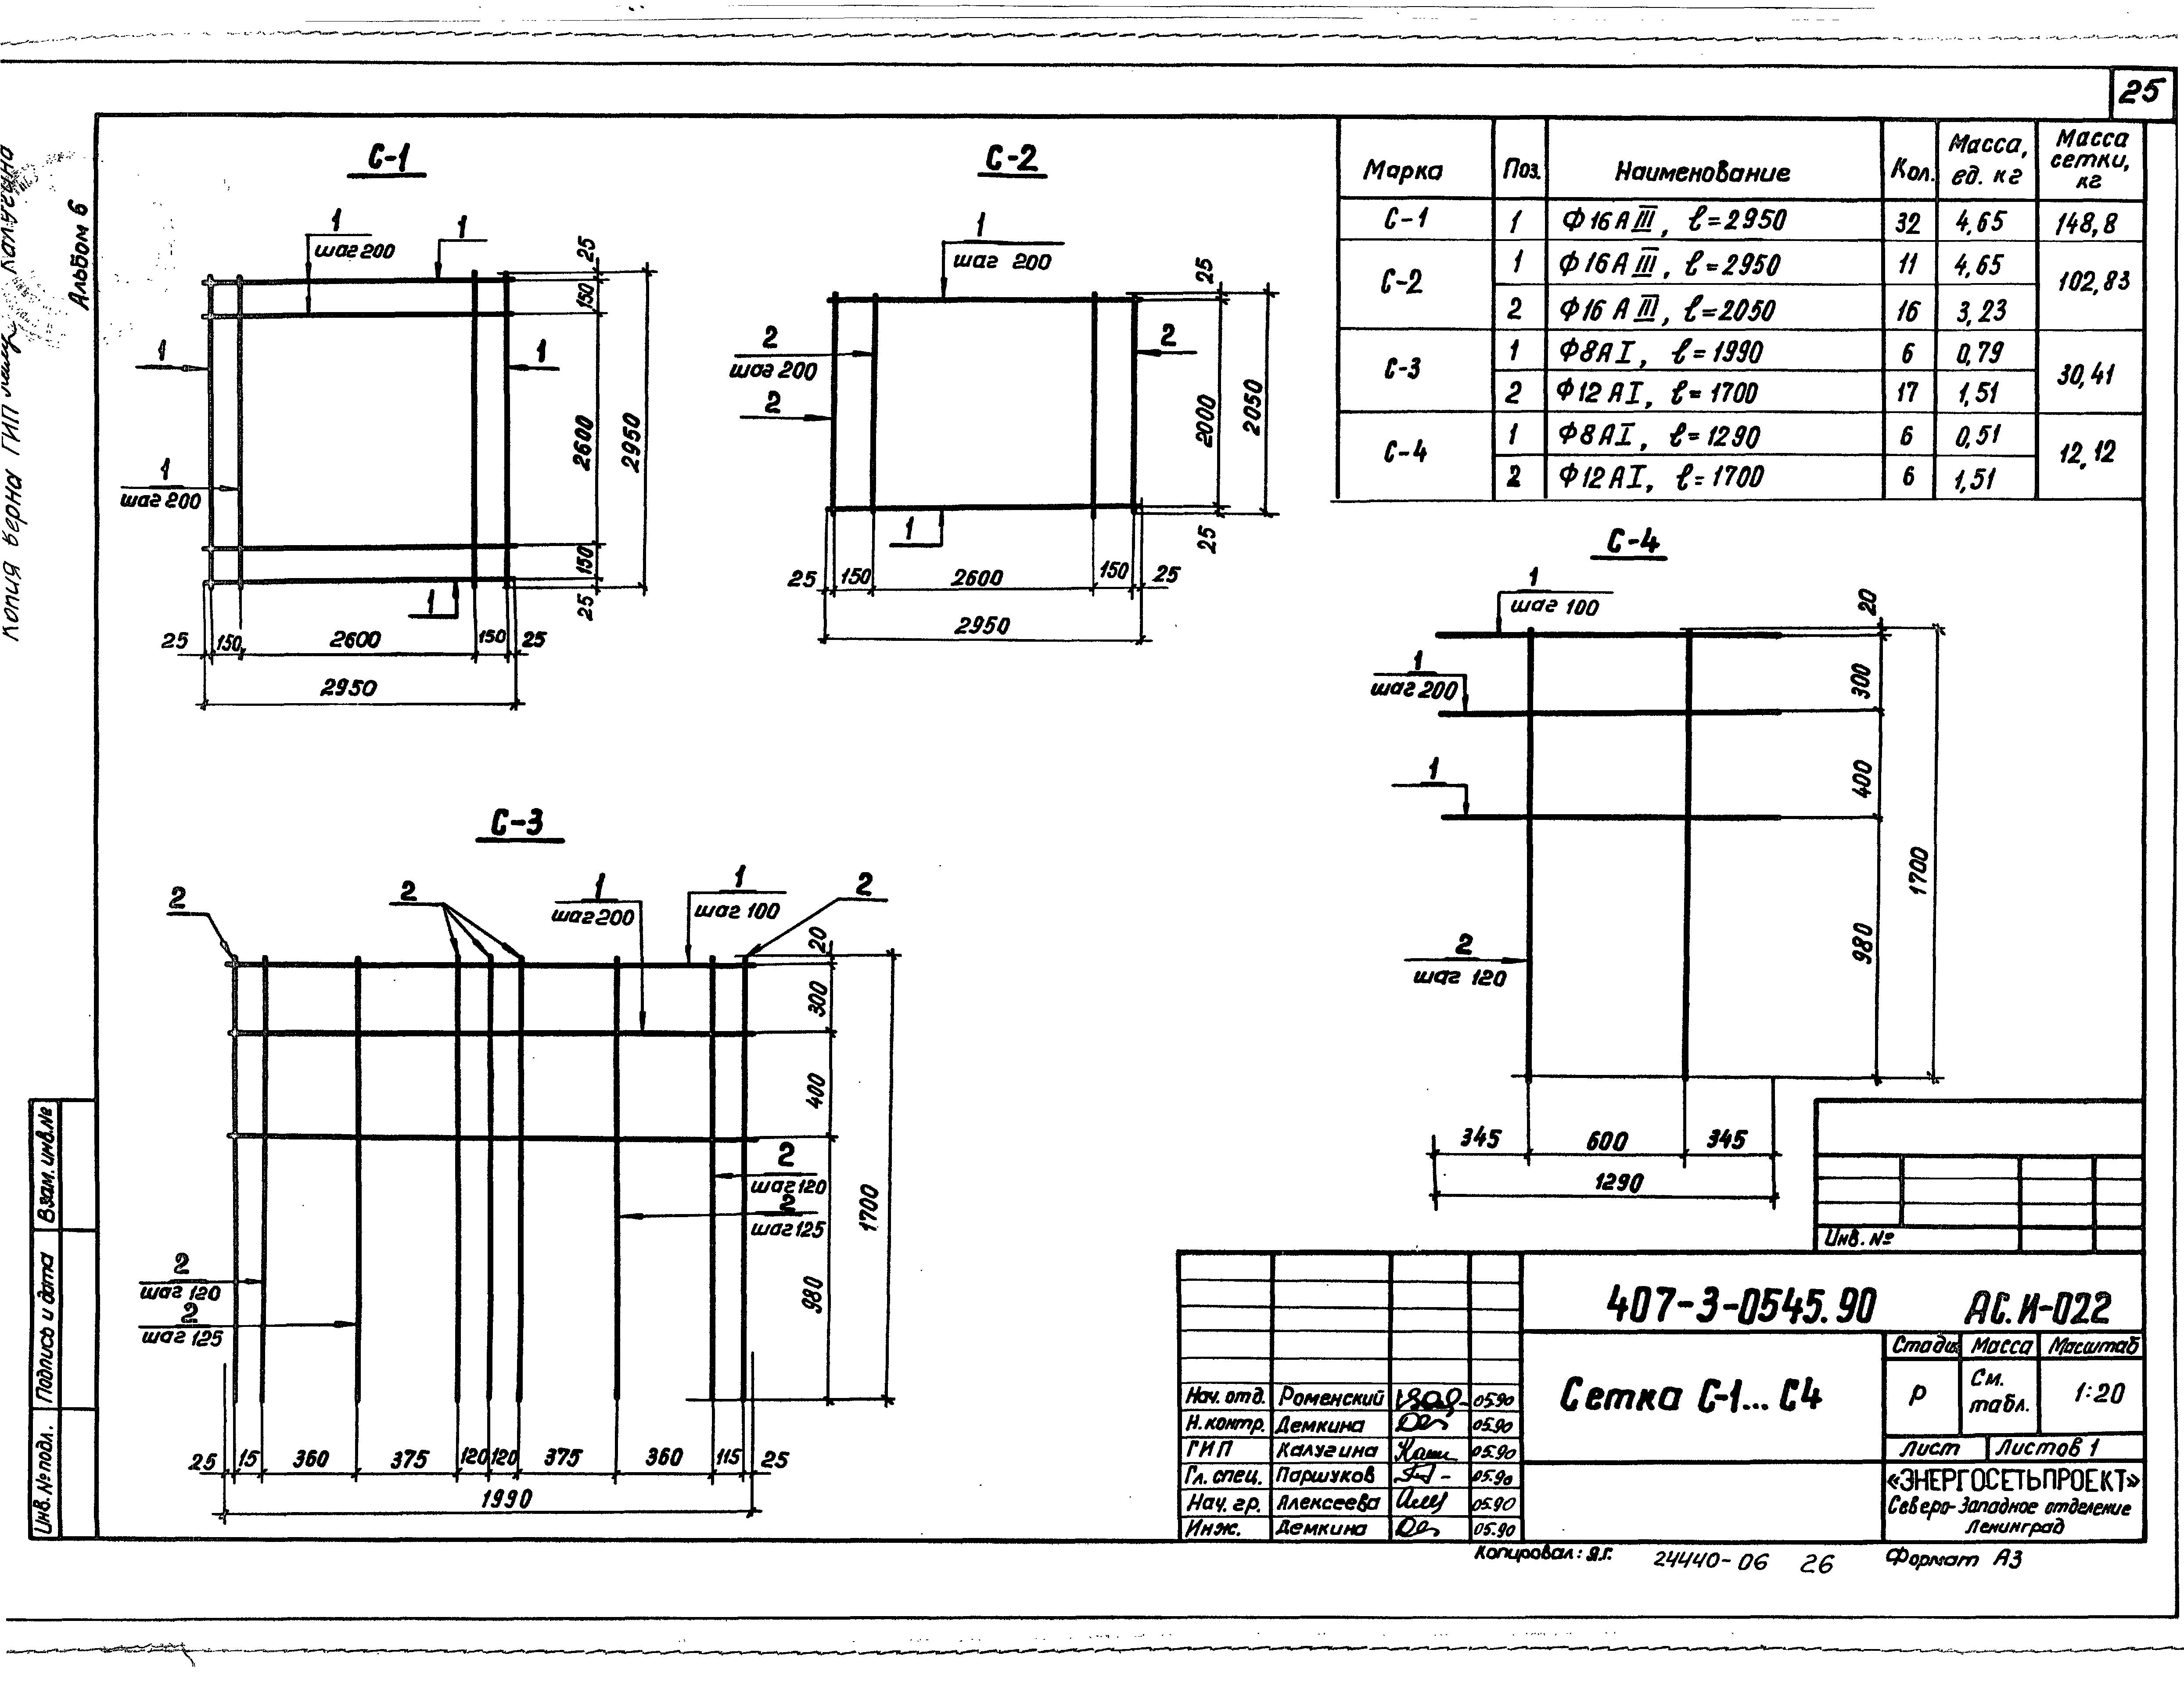 Типовые проектные решения 407-3-0540.90